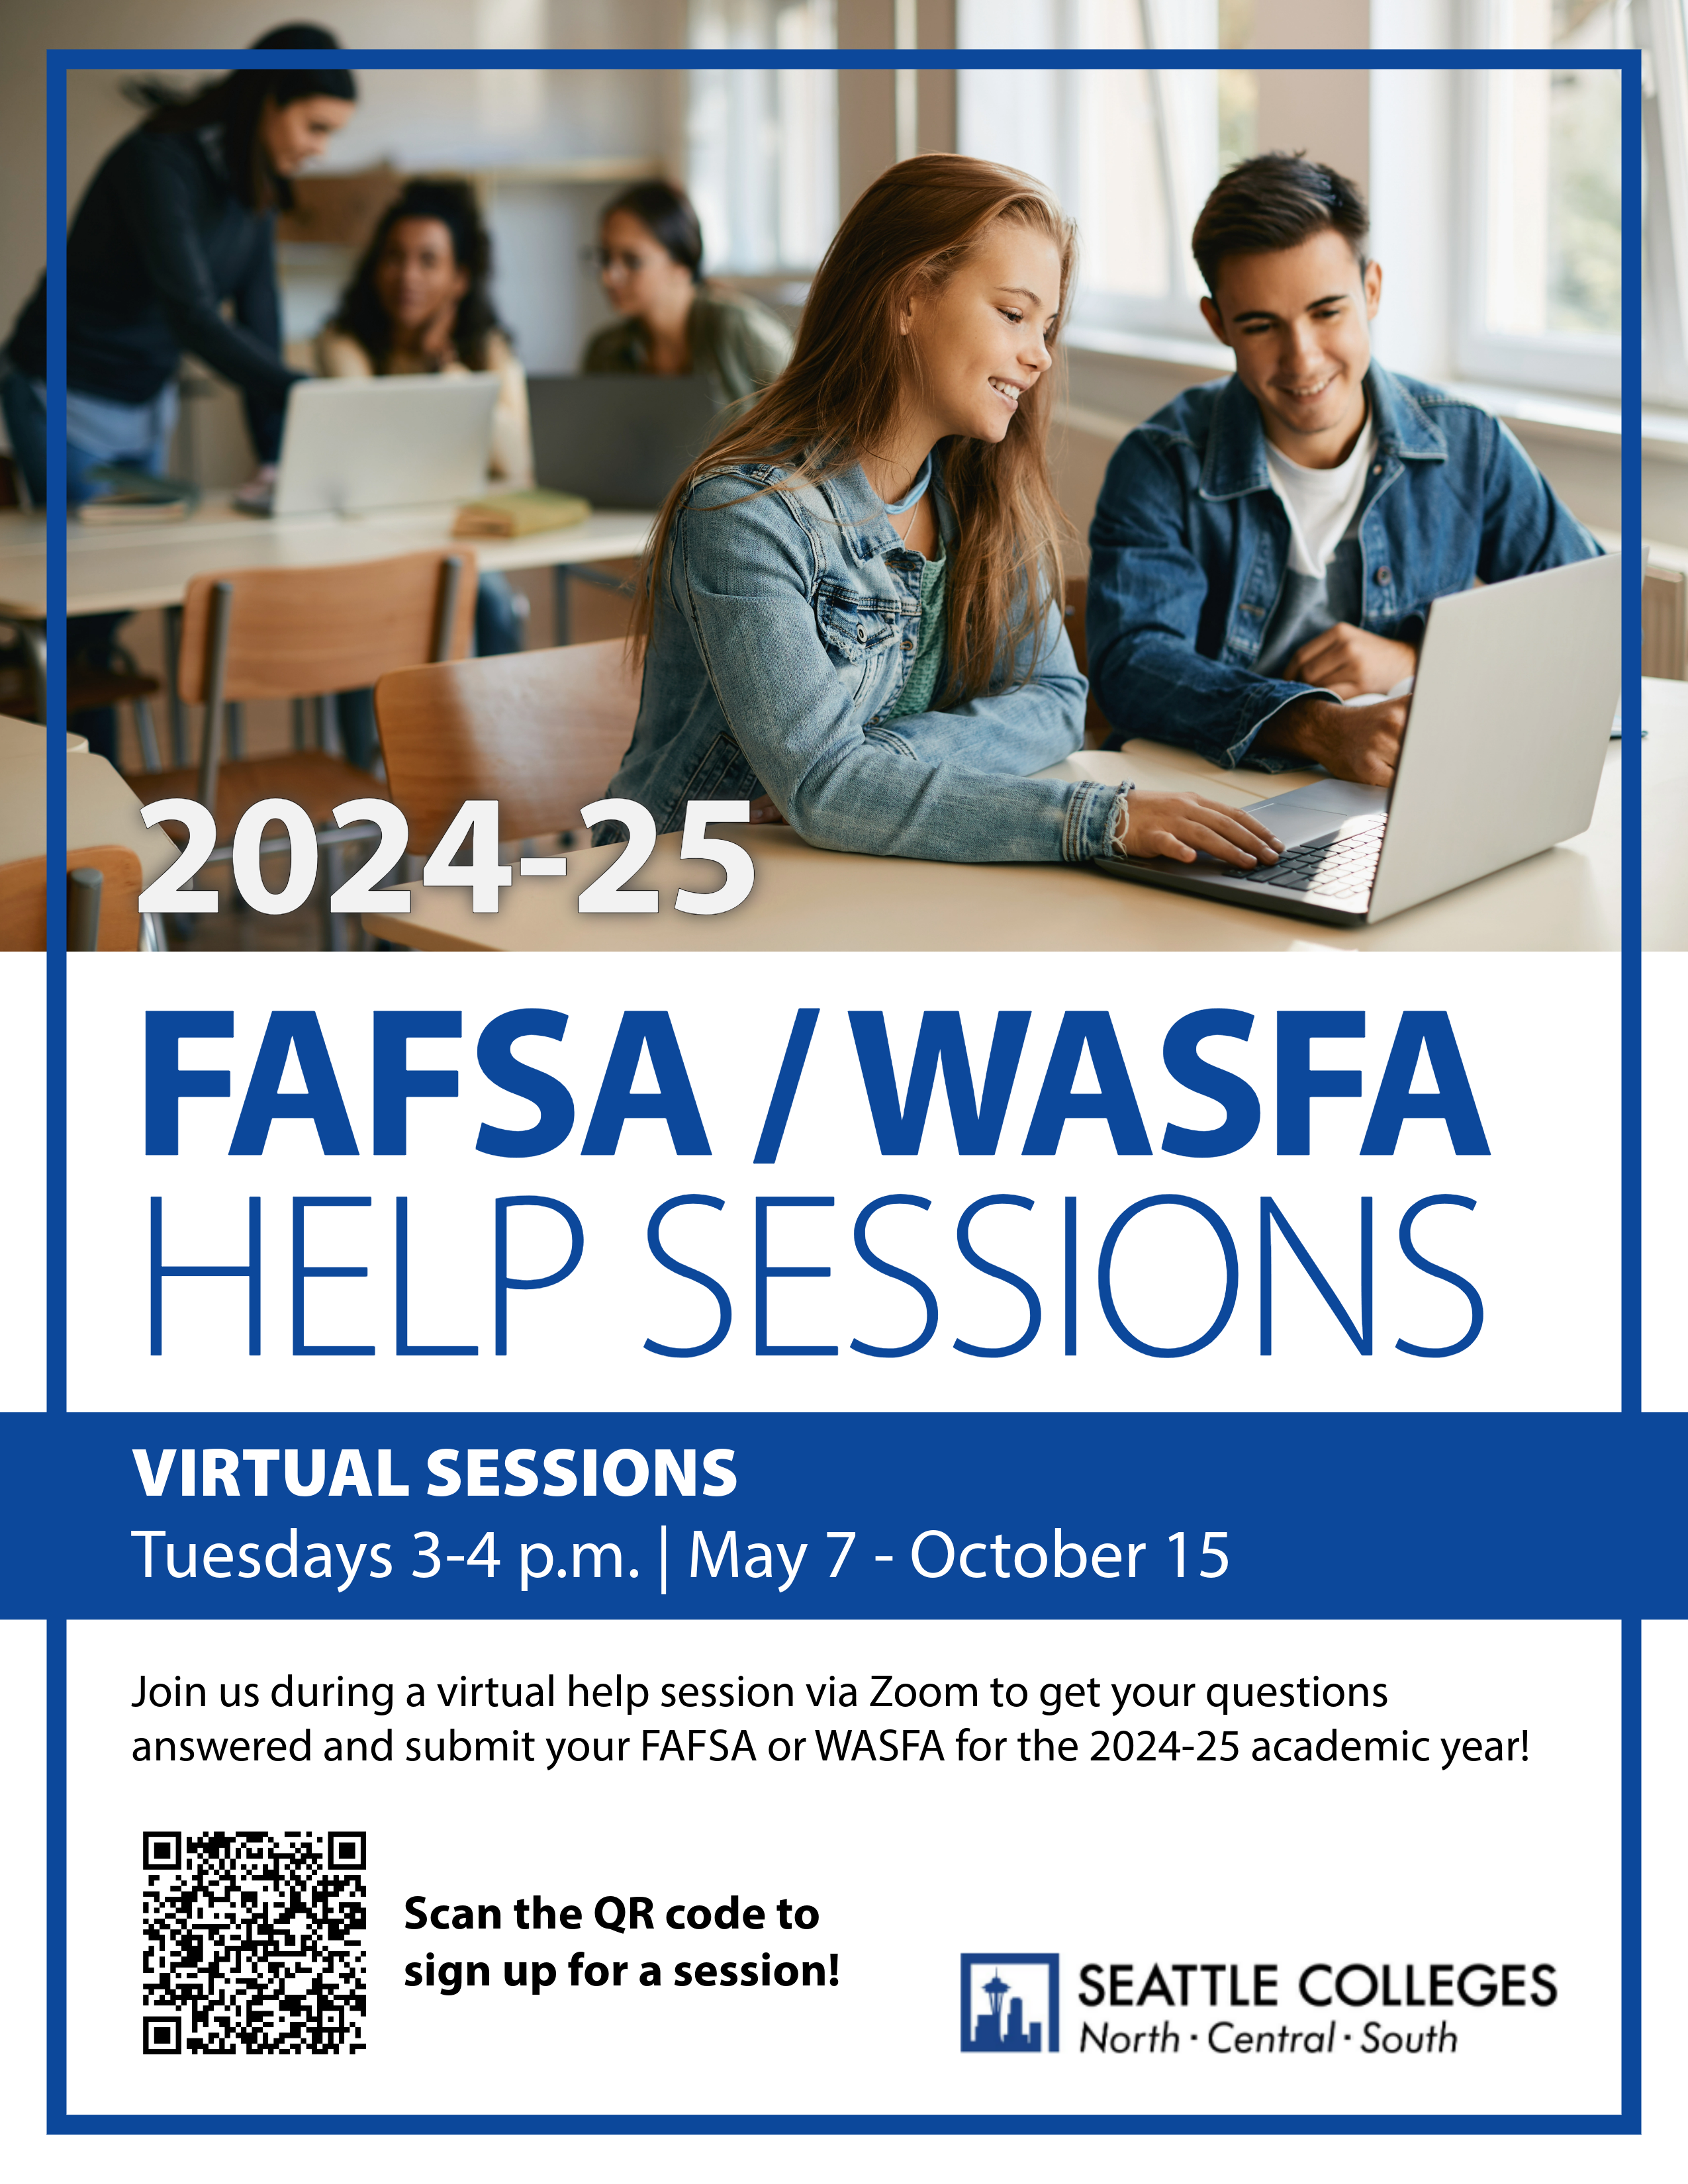 FAFSA/WAFSA Help Sessions